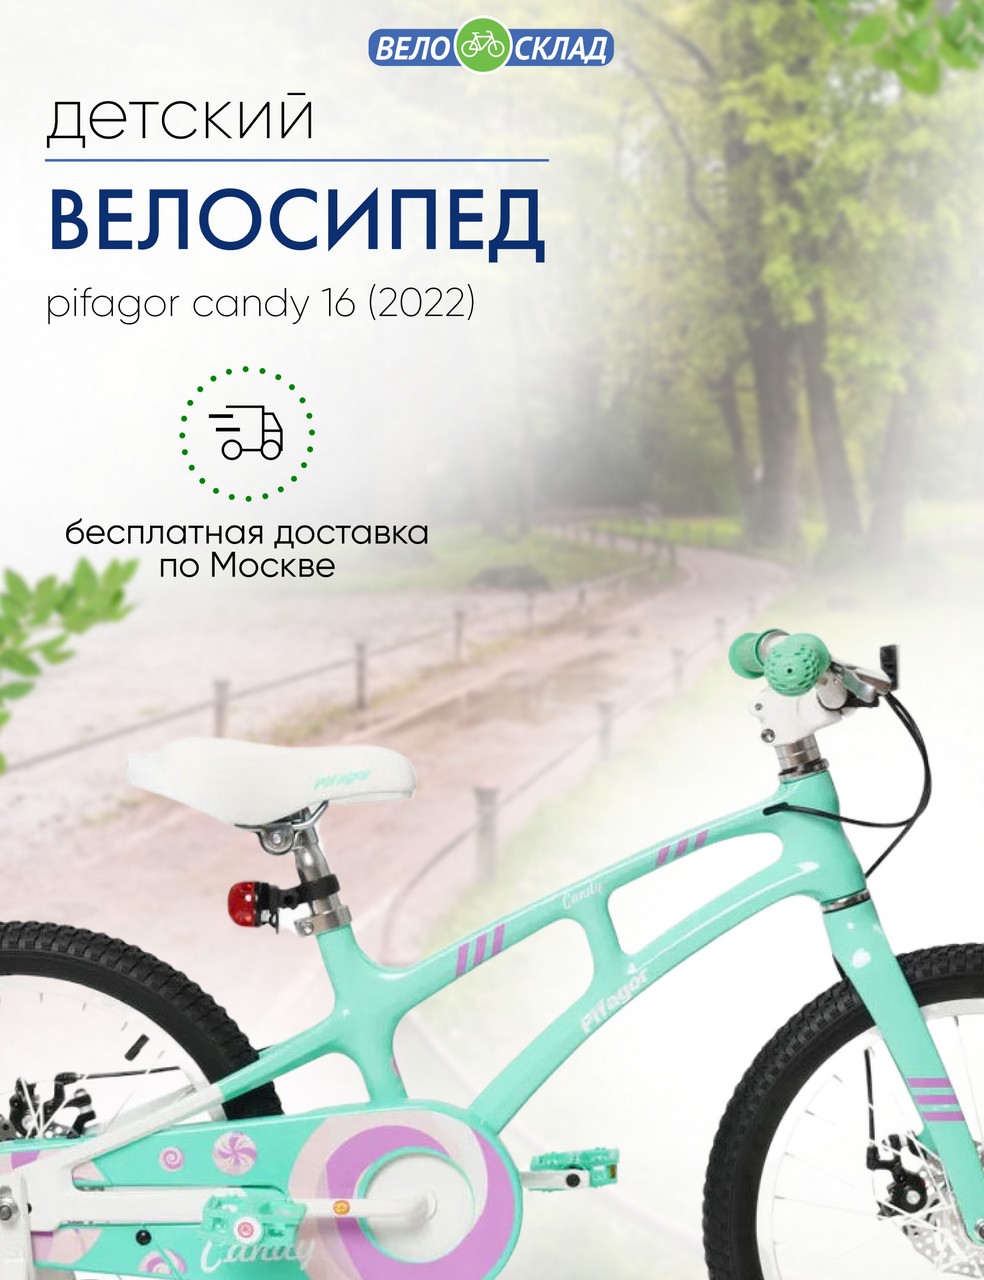 Детский велосипед Pifagor Candy 16, год 2022, цвет Зеленый